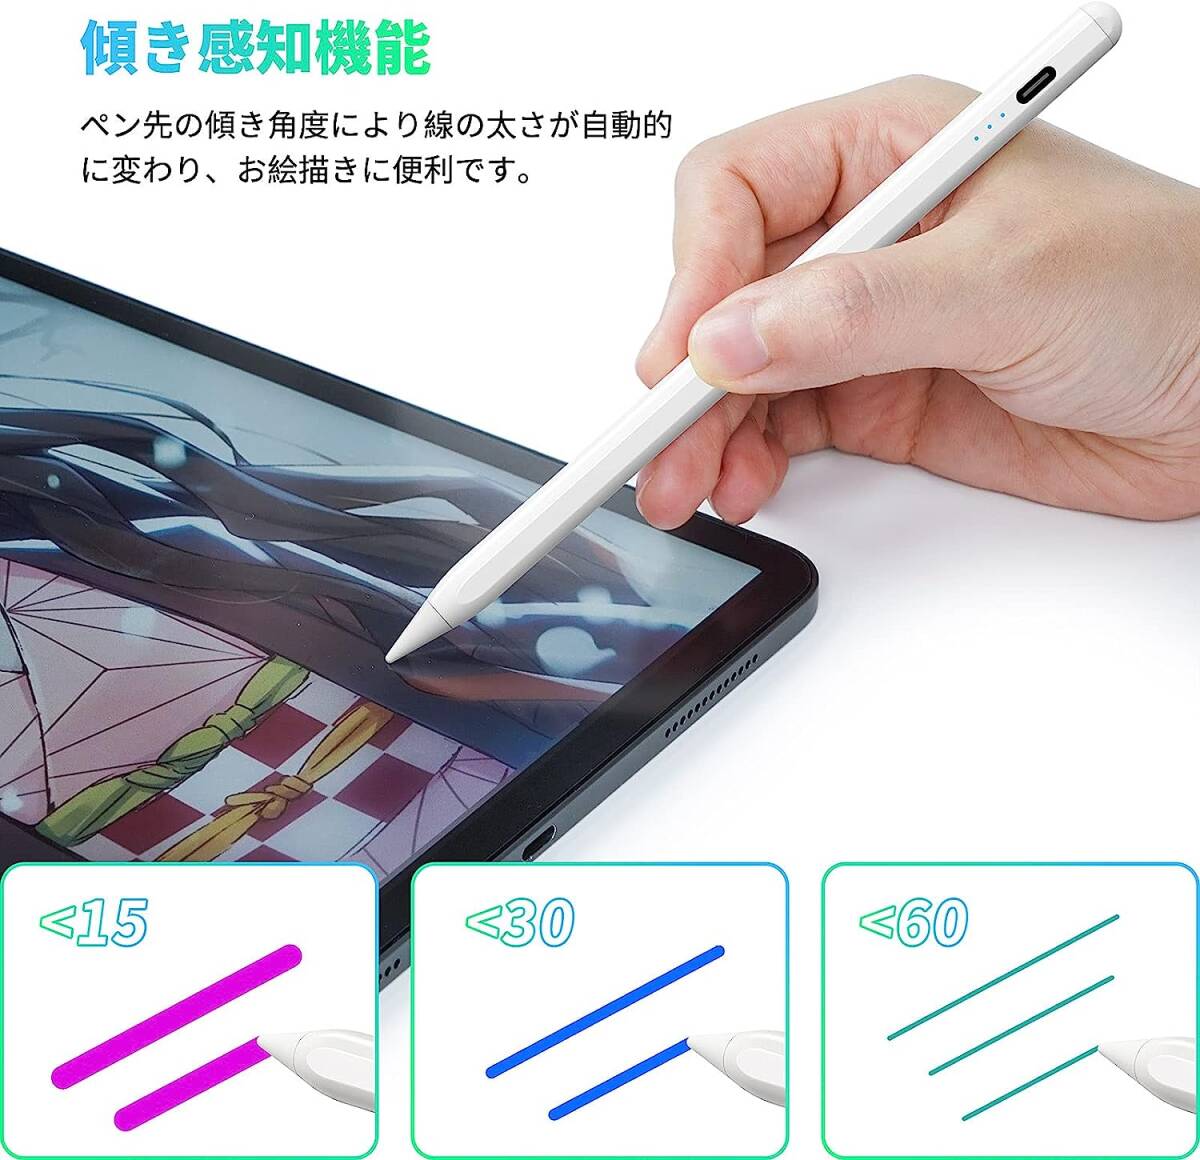 スタイラスペン iPad専用ペン 超高感度 極細 タッチペン iPad専用 傾き感知/誤作動防止/磁気吸着機能対応 軽量_画像6